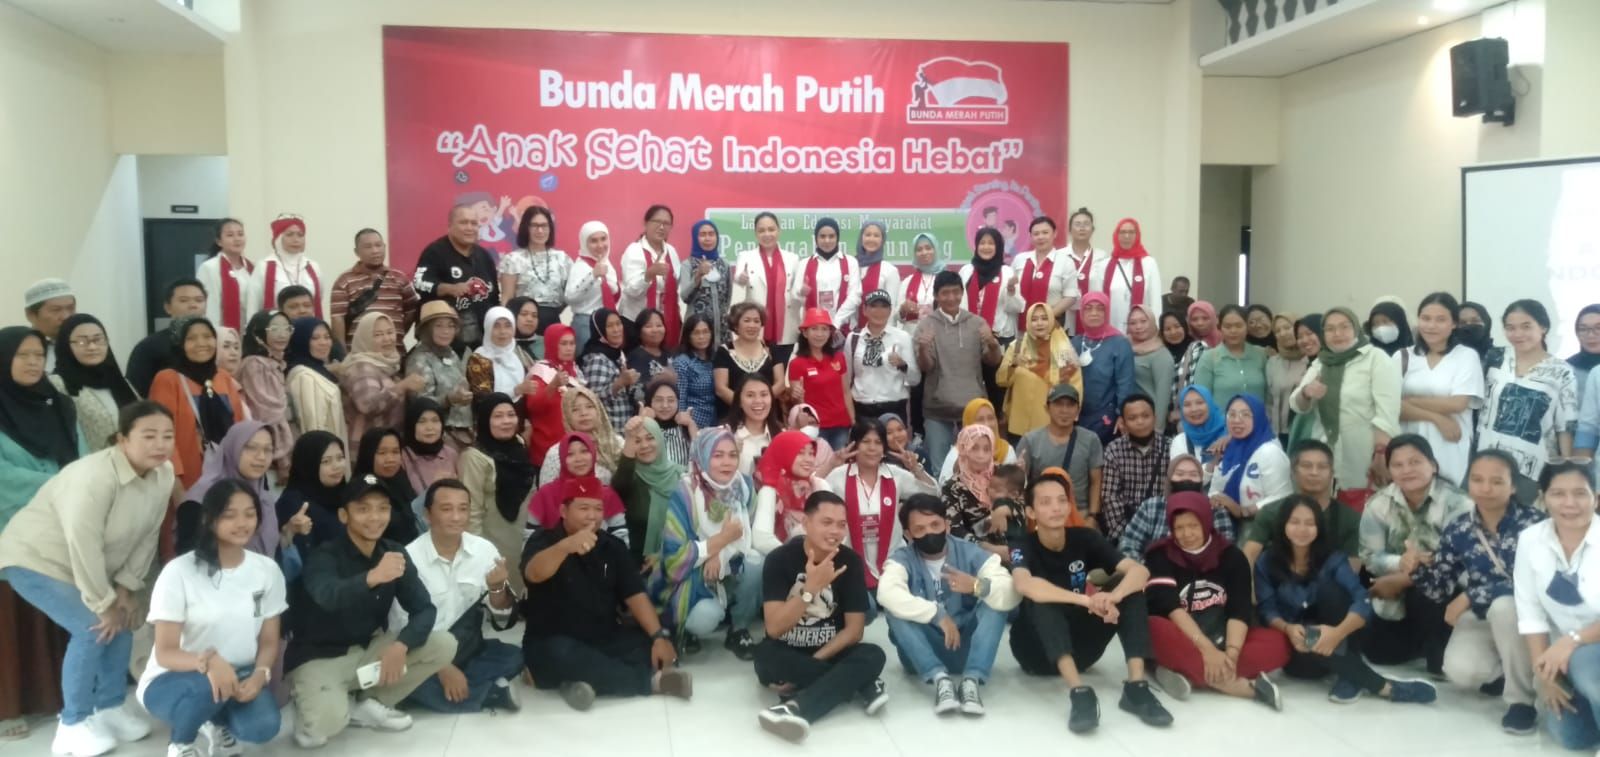 Bunda Merah Putih Edukasi Masyarakat dengan Gelar Acara Tema “Anak Sehat Indonesia Hebat